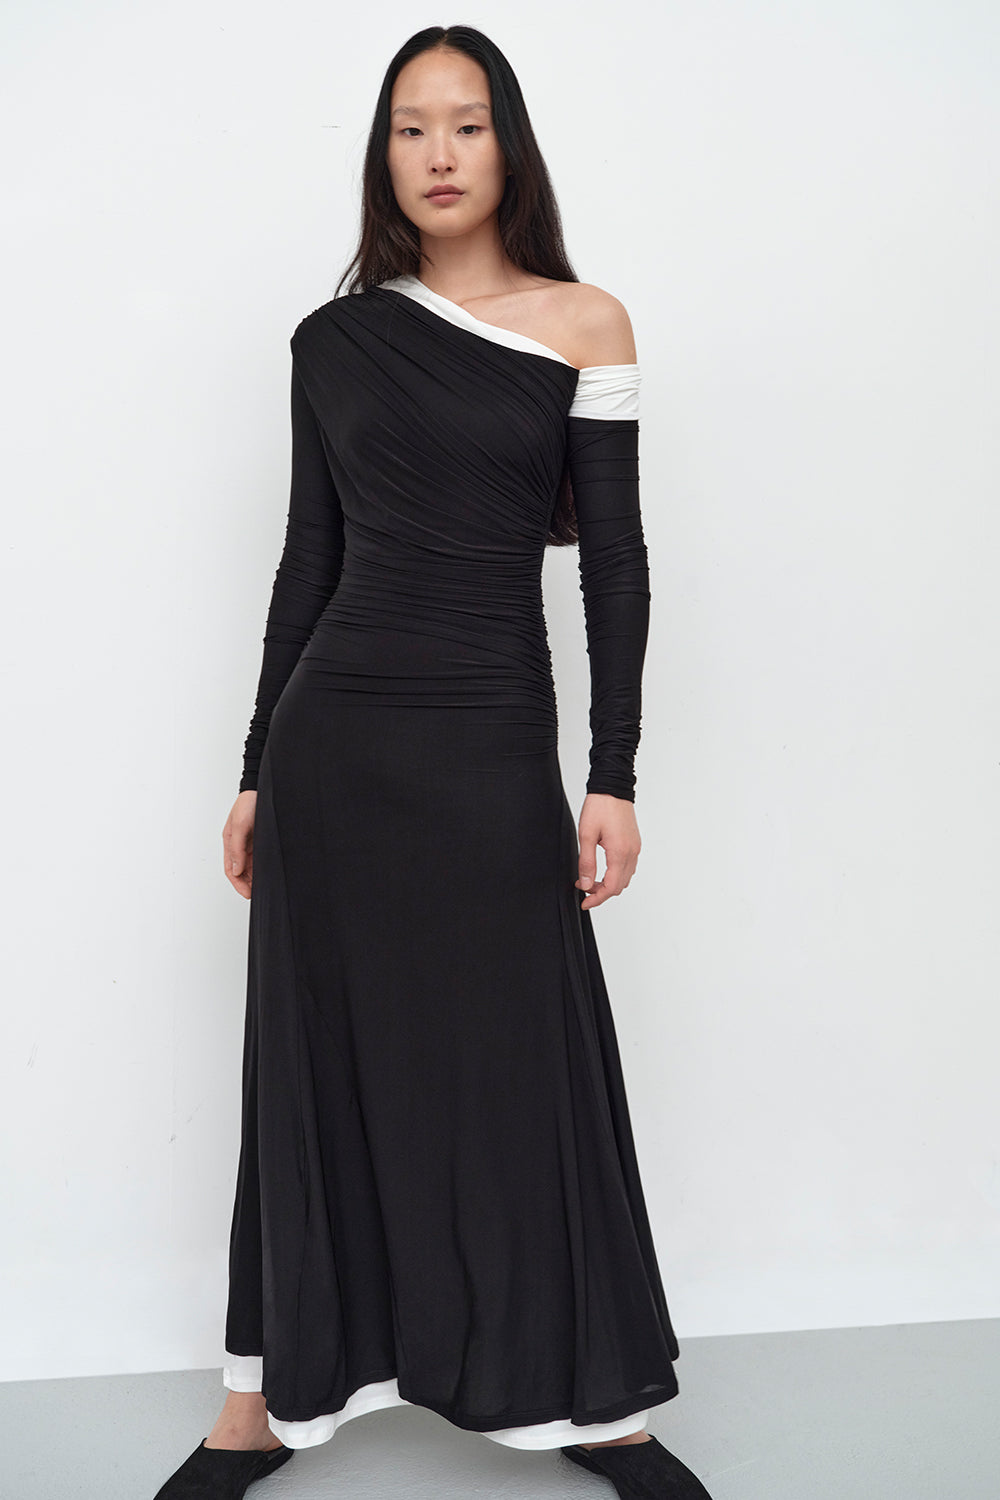 Dresses · TOVE Studio · Advanced Contemporary Womenswear Brand